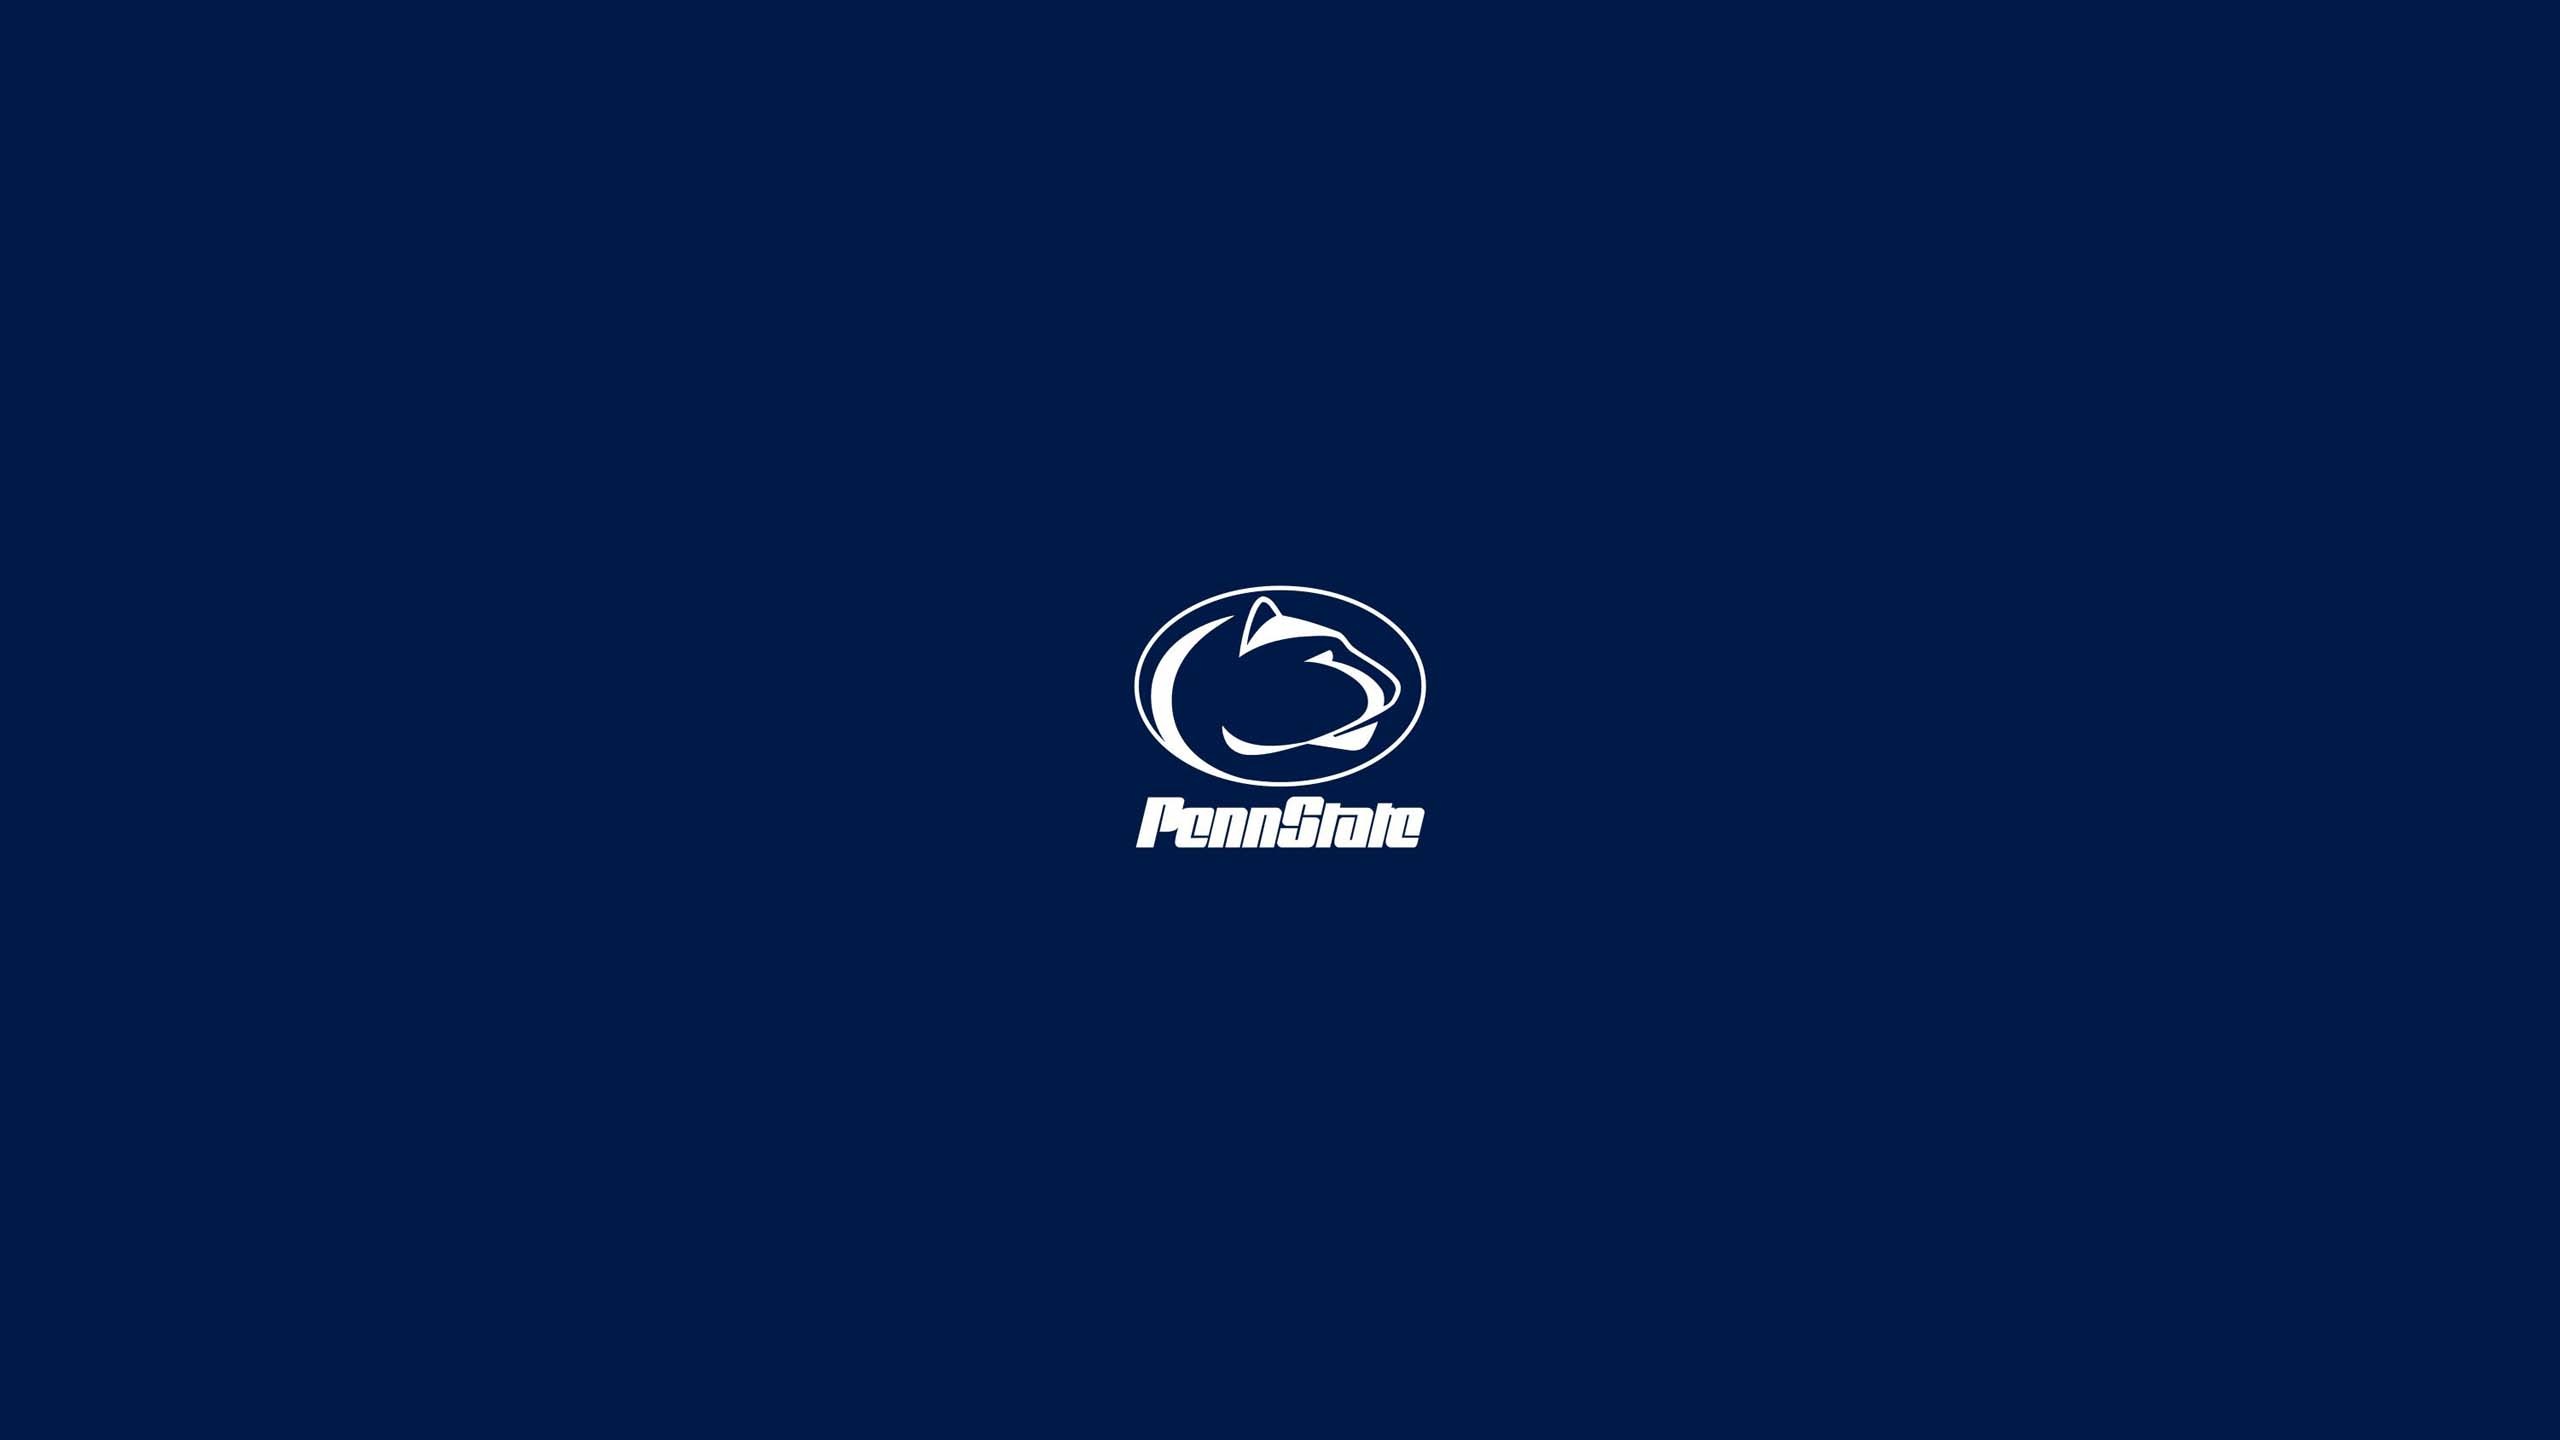 2560x1440 Penn State Logo Wallpaper 44452 2560Ã1440 px ~ fond ecran